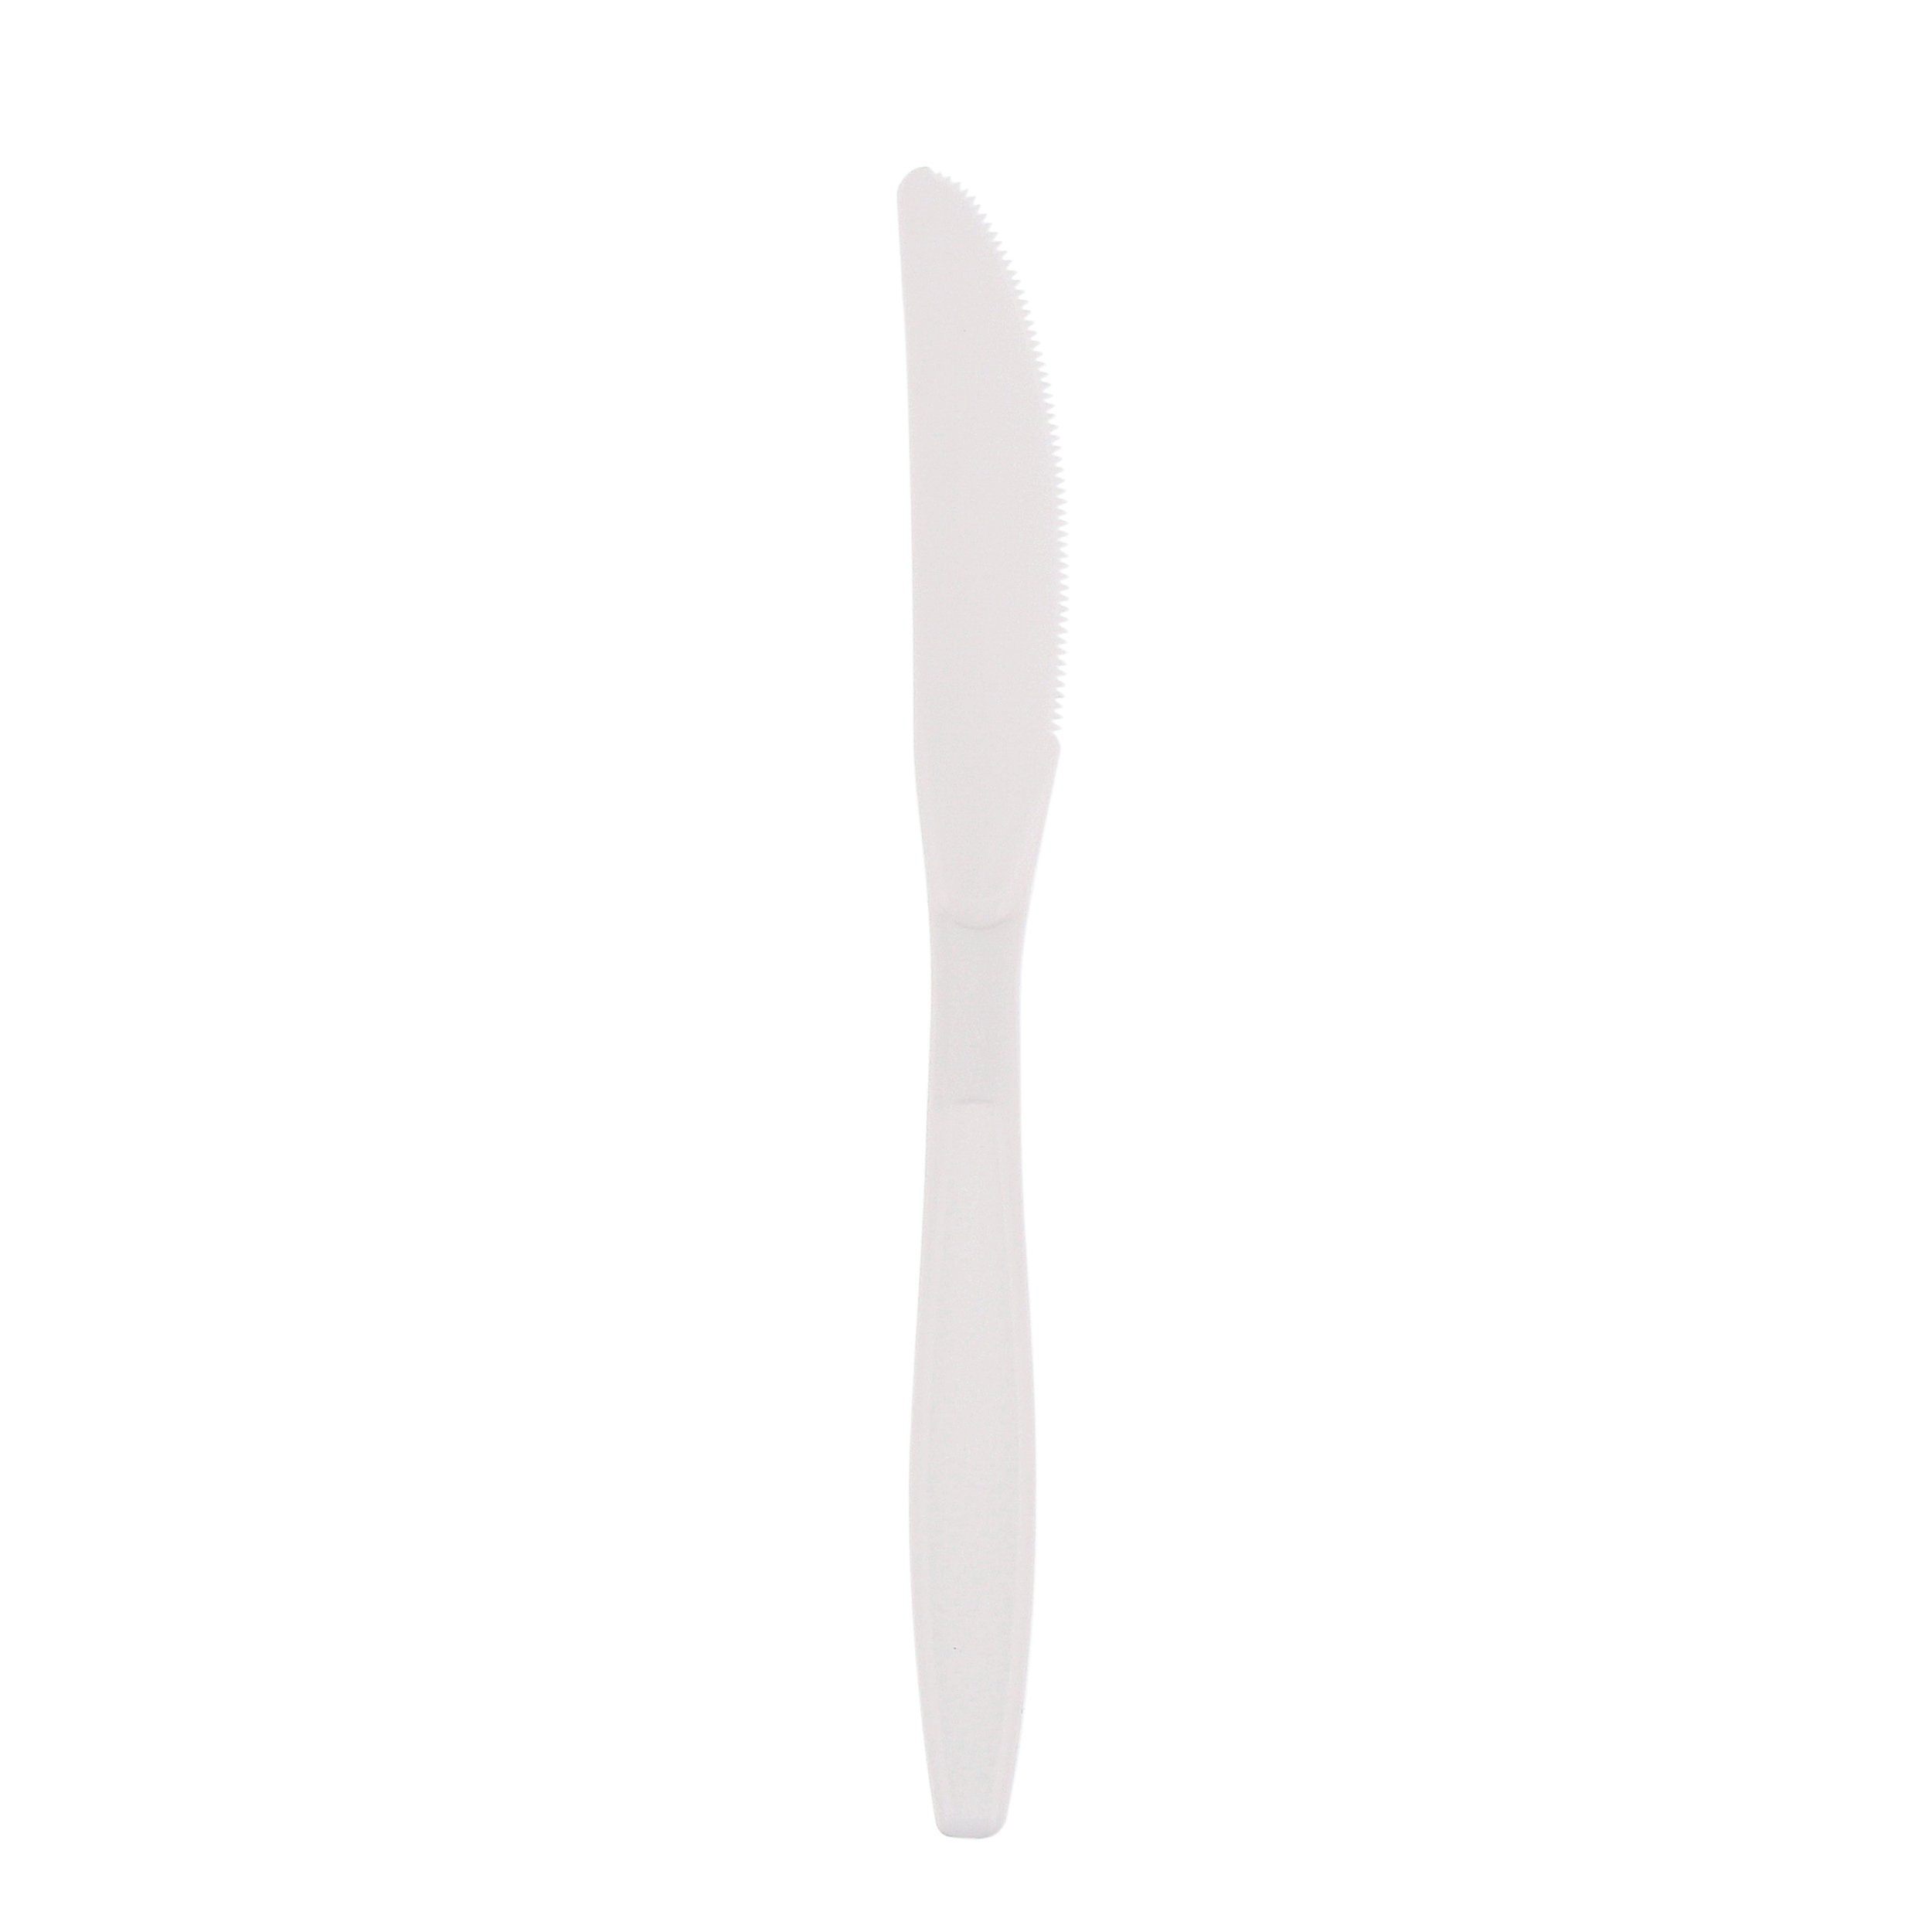 Knife heavy white PP Bulk (1000)